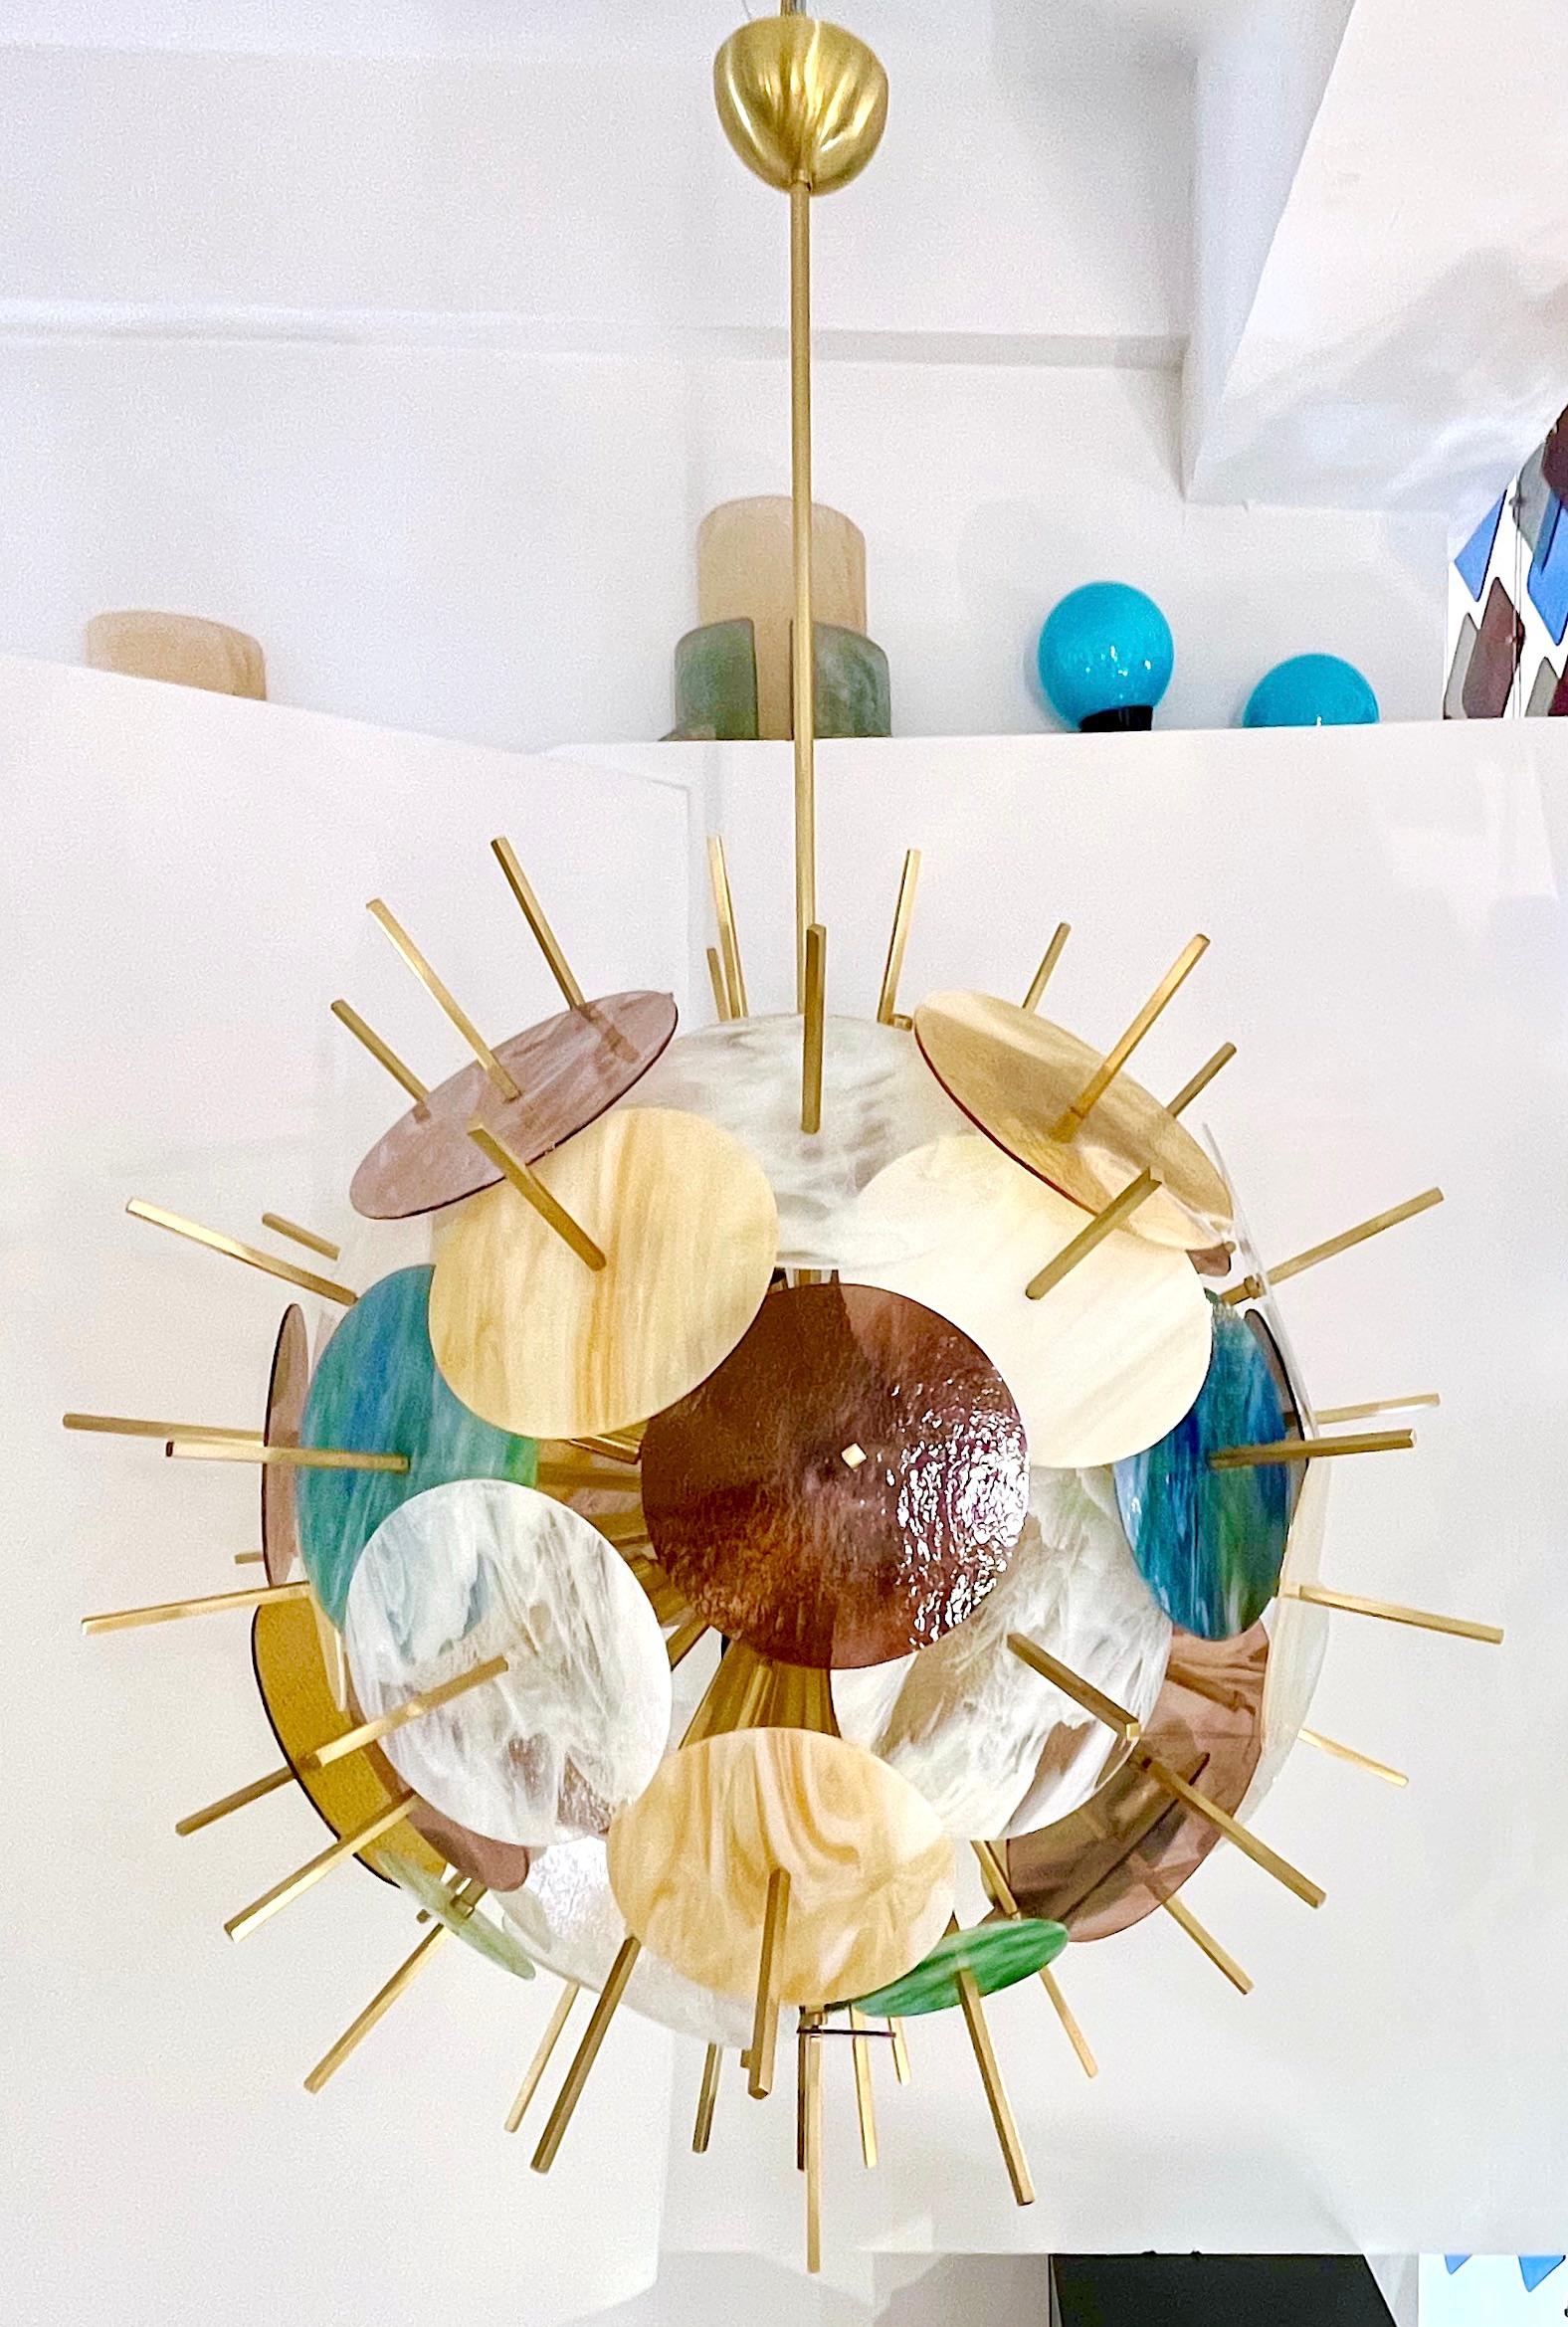 Zeitgenössischer, exklusiver italienischer Sputnik-Kronleuchter in runder Form, vollständig handgefertigt, ein verlockendes, modernes, rundes Design mit einer Messingstruktur, die aus einem zentralen Kern besteht, der ausladende Messing-Baguettes